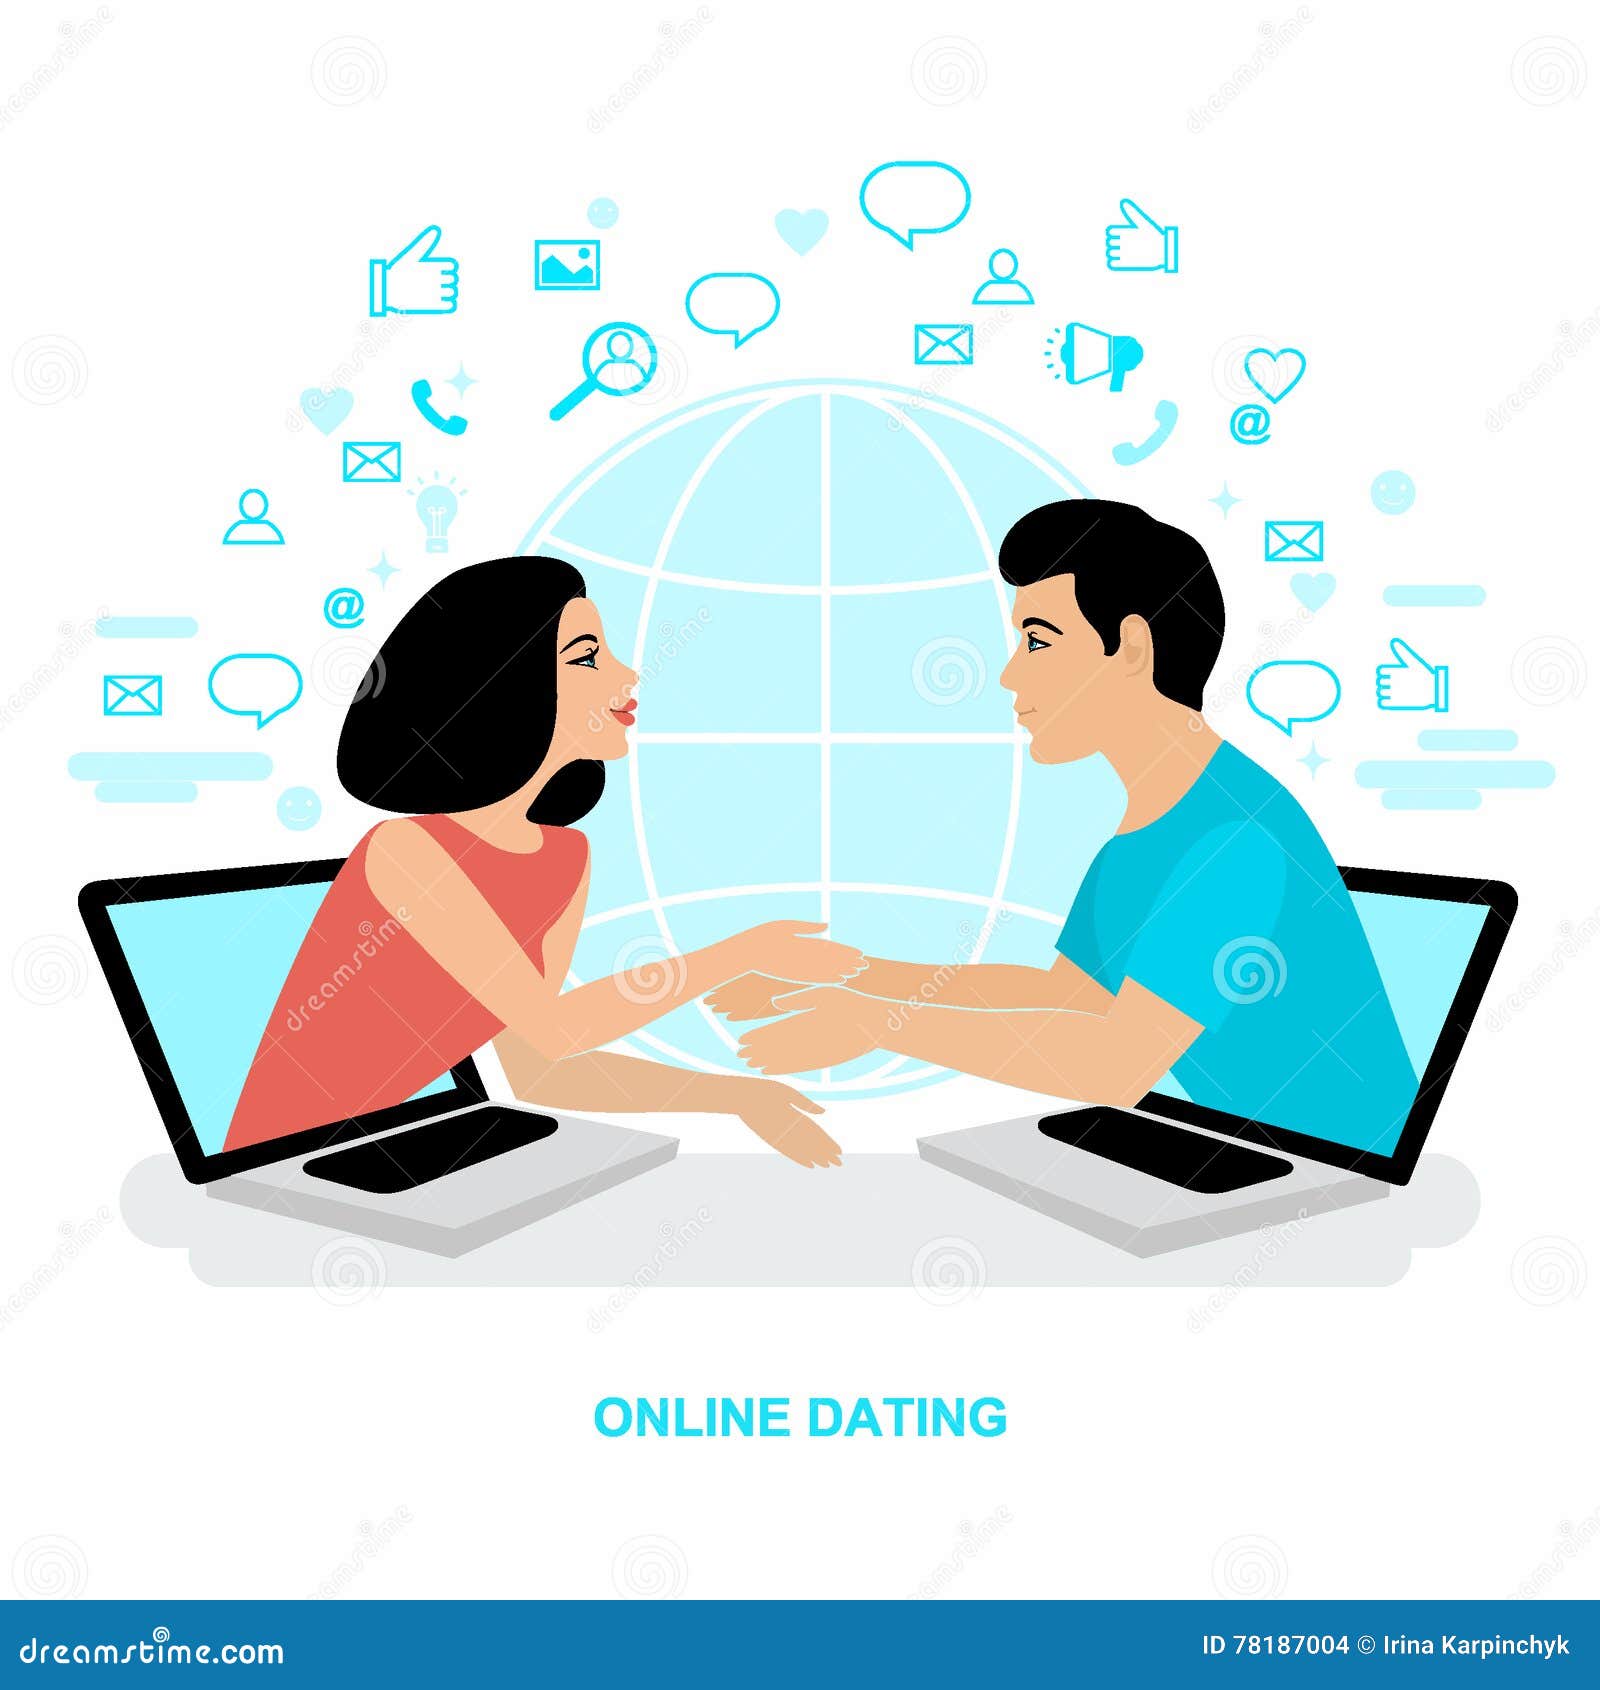 Www kostenlose online-dating